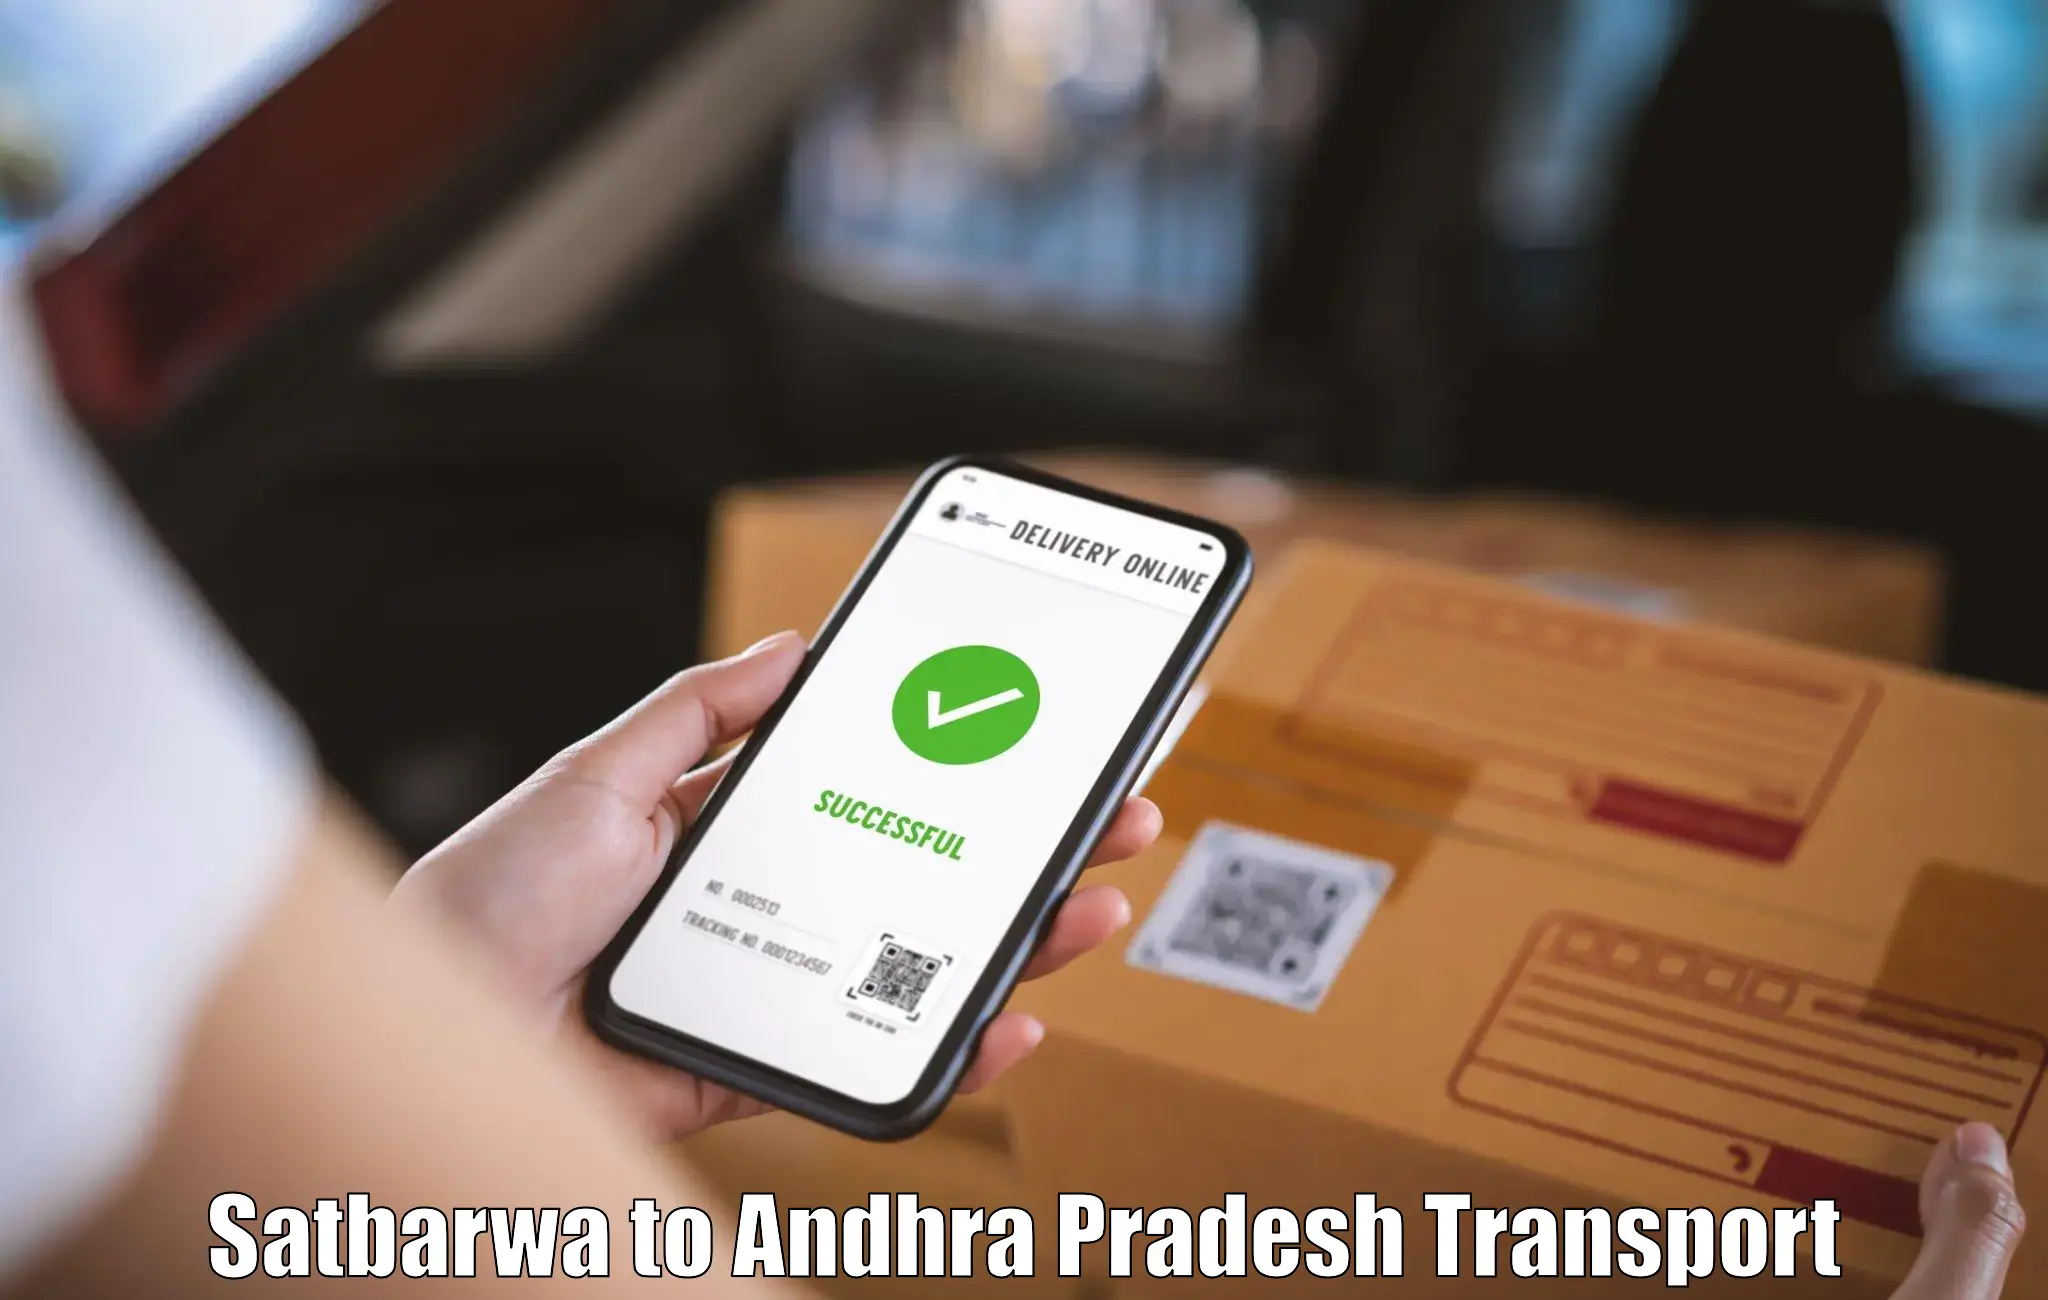 Land transport services Satbarwa to Andhra Pradesh